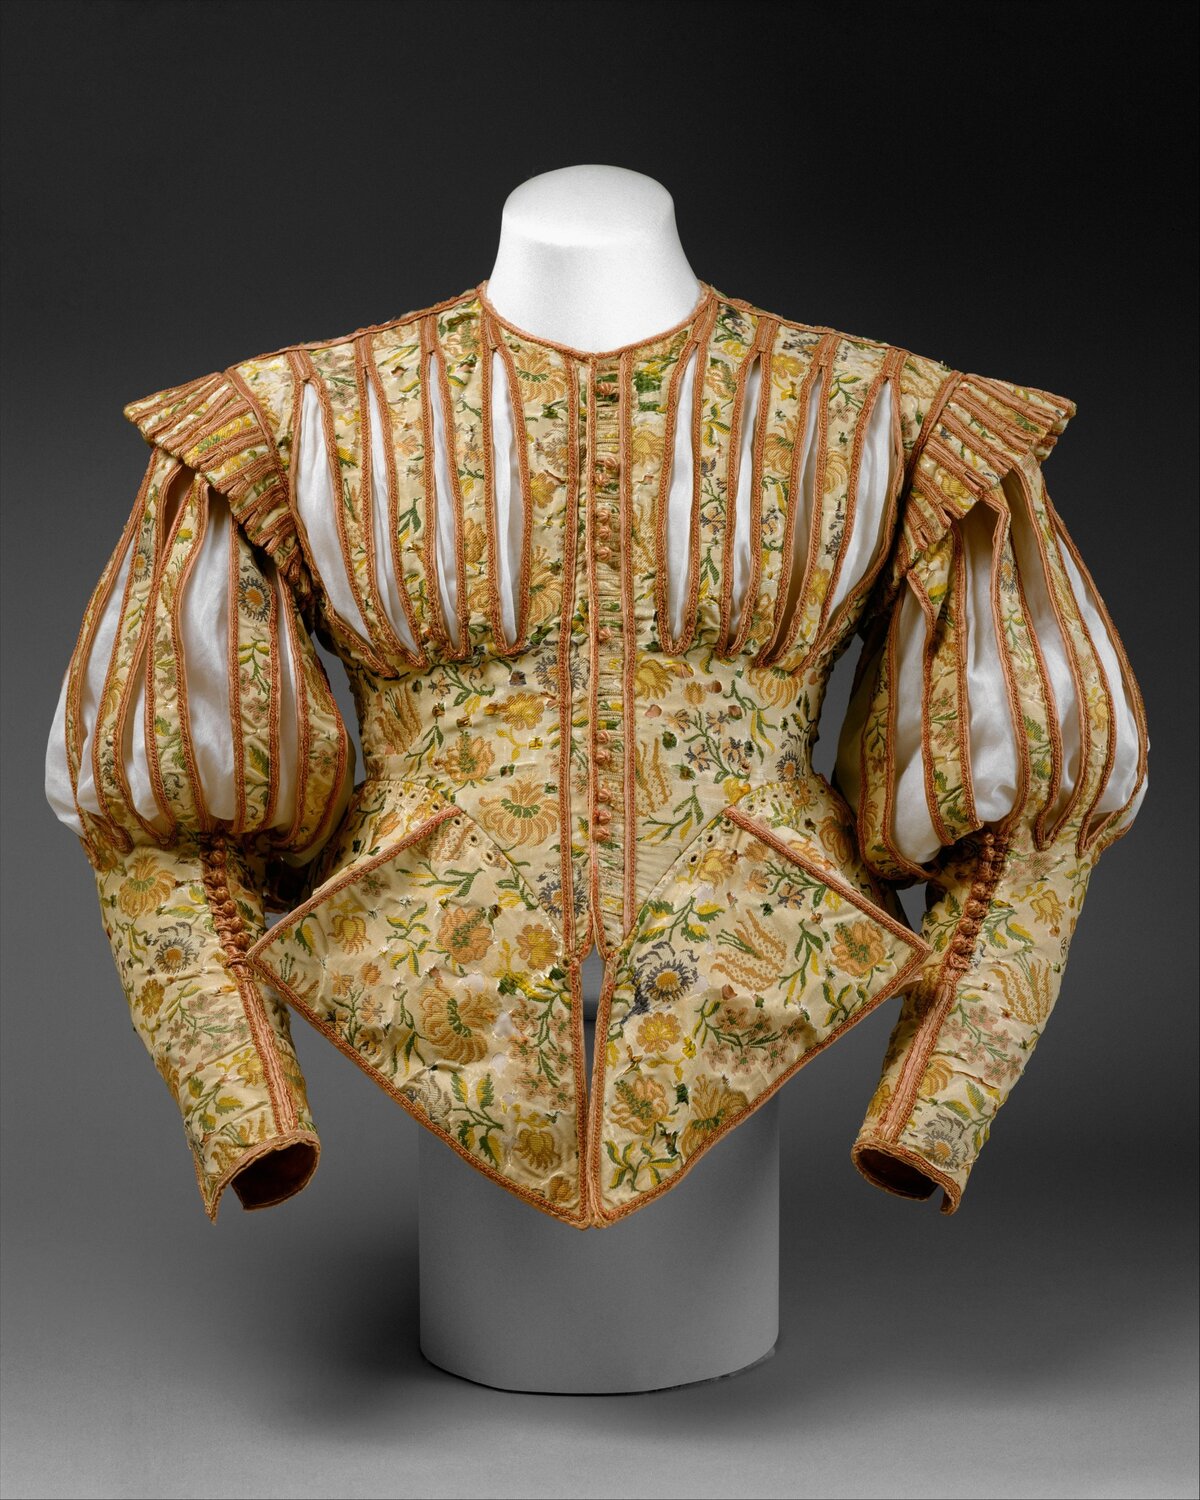 Ez a rendkívüli dublett az 1620-as évekből származó típusának mindössze két fennmaradt példánya közül az egyik. Az egyetlen másik ismert ilyen típusú doublet a londoni Victoria és Albert Múzeum gyűjteményében található. A rózsaszínnel és díszes résekkel díszített, fényűző selyemből készült kabát egy alig öt éve létező divatot követett. A pinkelés, vagyis az anyag szándékos bevágása népszerű dekoratív technika volt, amelyet színes bélések, ingek és vegyesruhák felfedésére használtak. Lehetséges, hogy ezt a ruhadarabot korábban más célra rózsaszínezett selyemből készítették, mivel a létrehozott minta nem követi a ruhadarab szabását.

